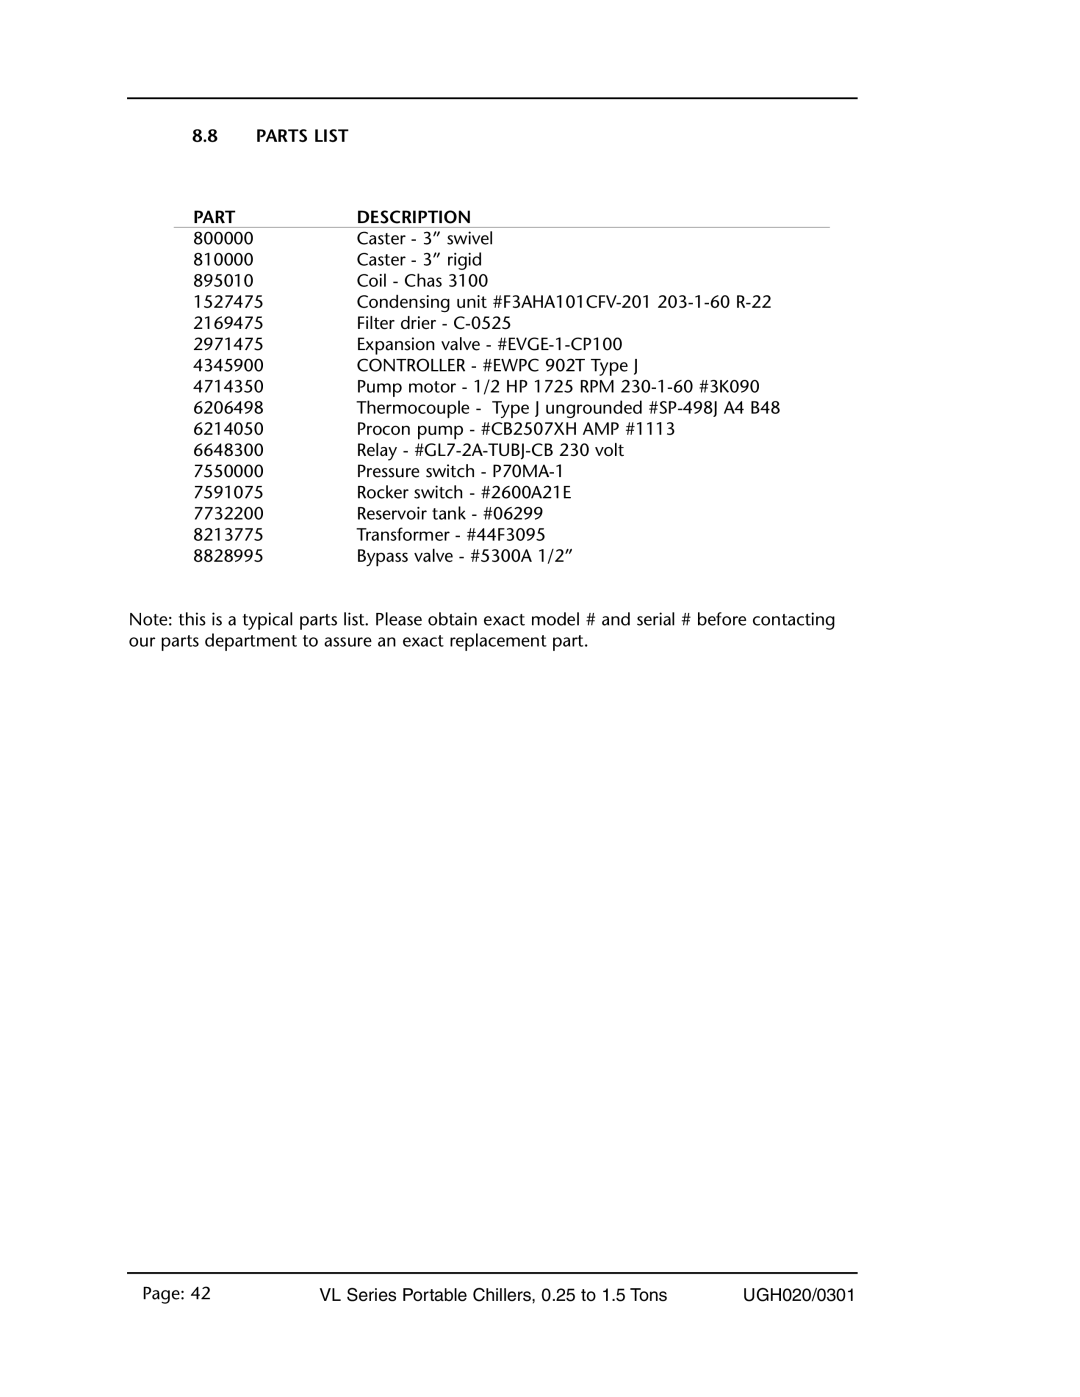 Conair VL Series manual 8.8PARTS LIST, Part, Description 